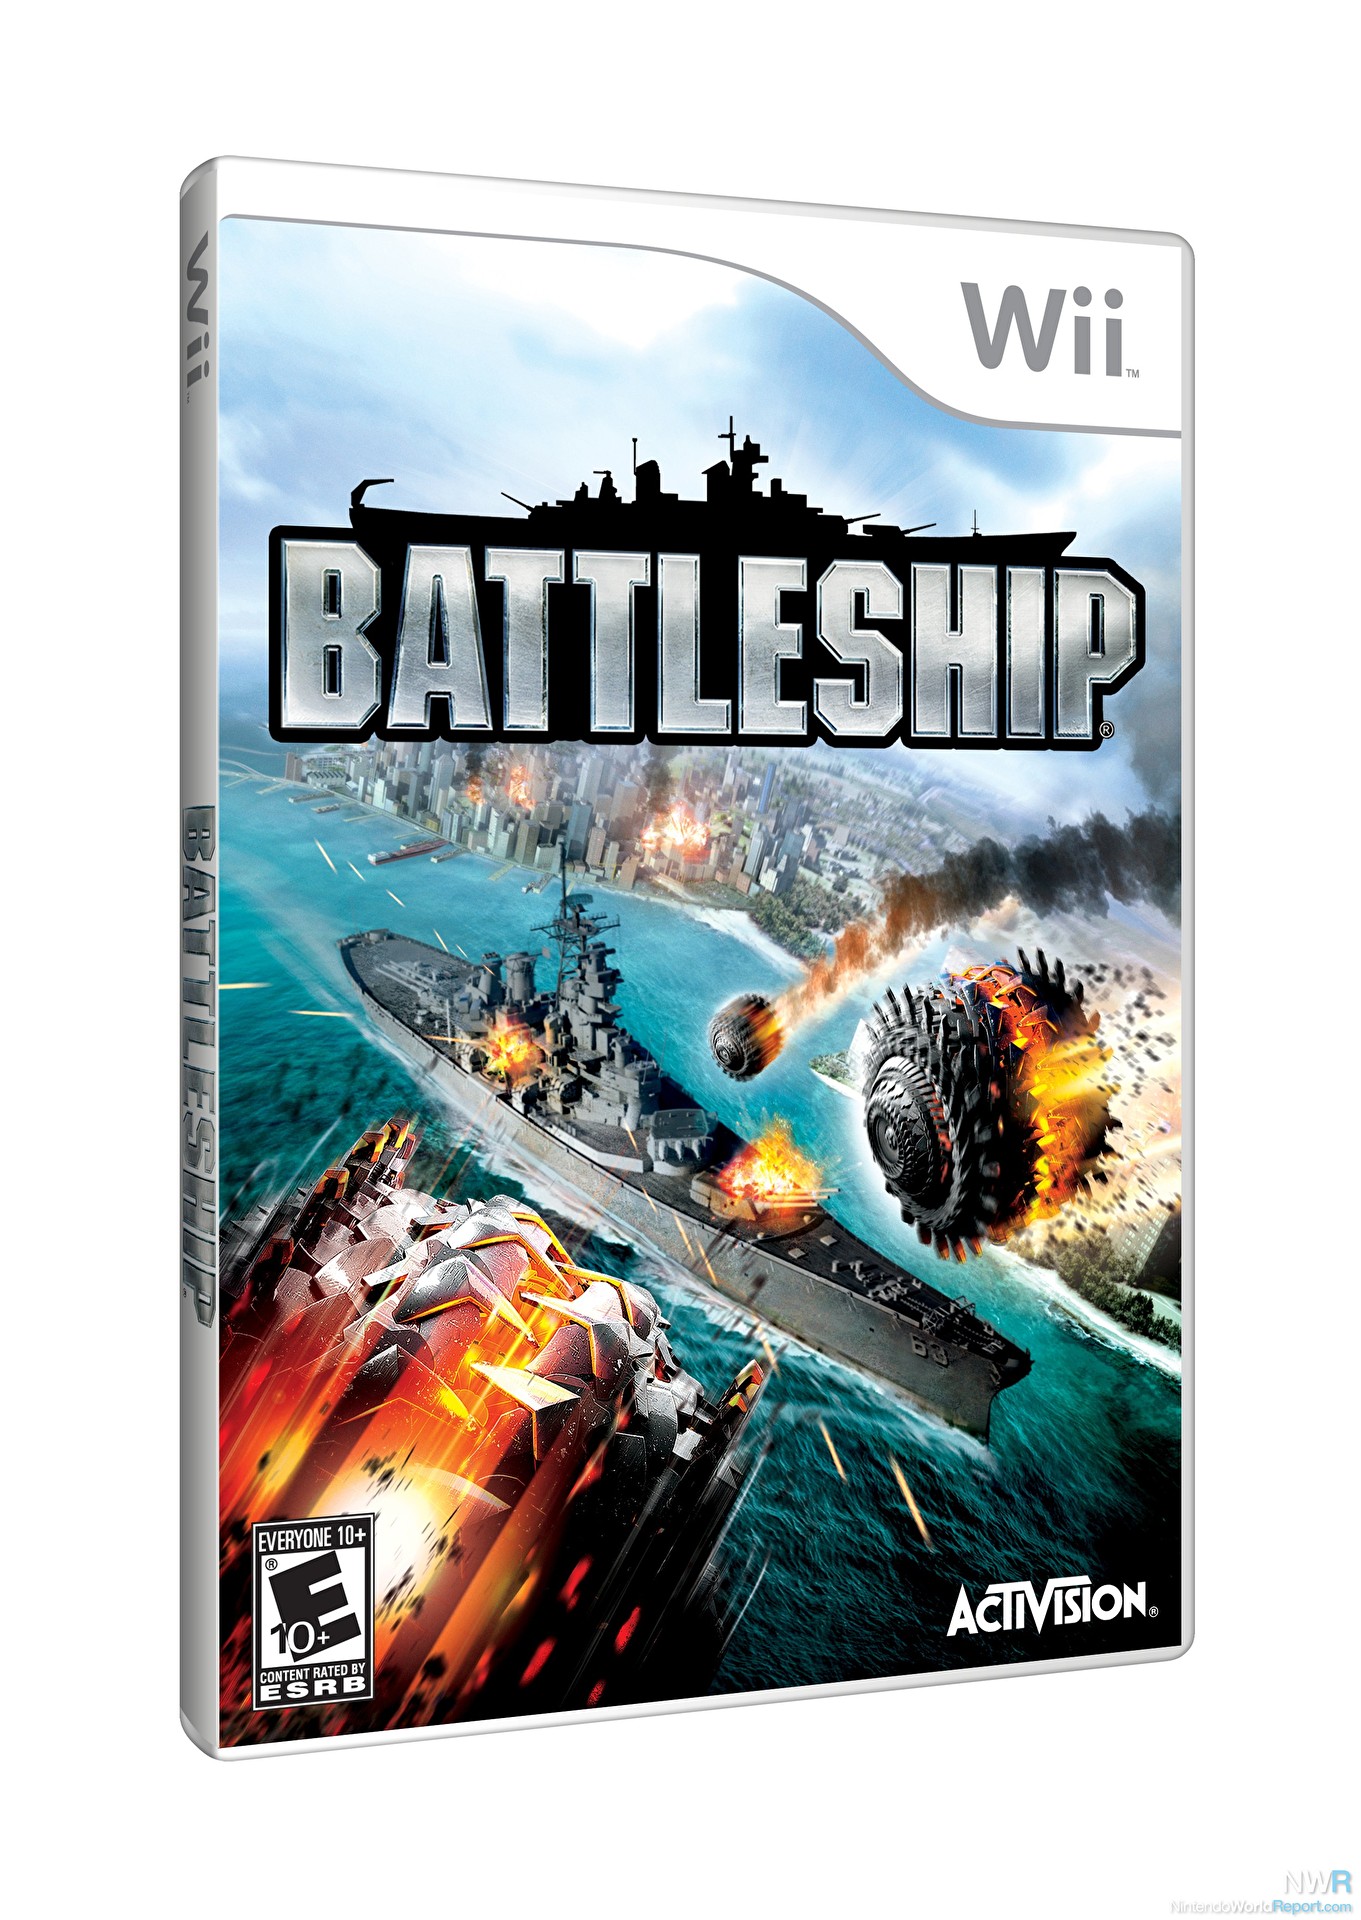 Battleship Review - Review - Nintendo World Report